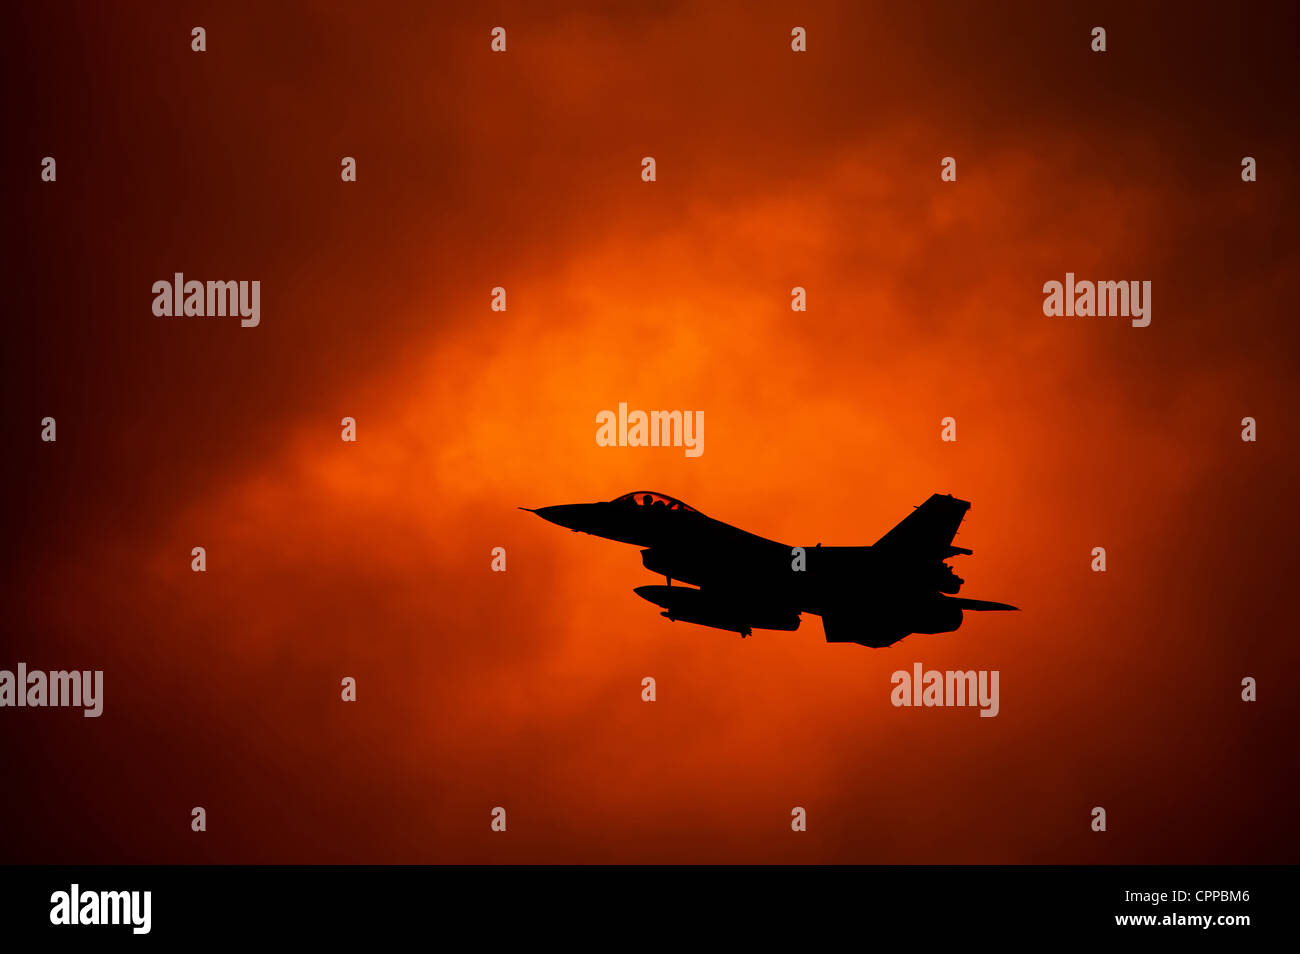 F-16 on orange sky Stock Photo